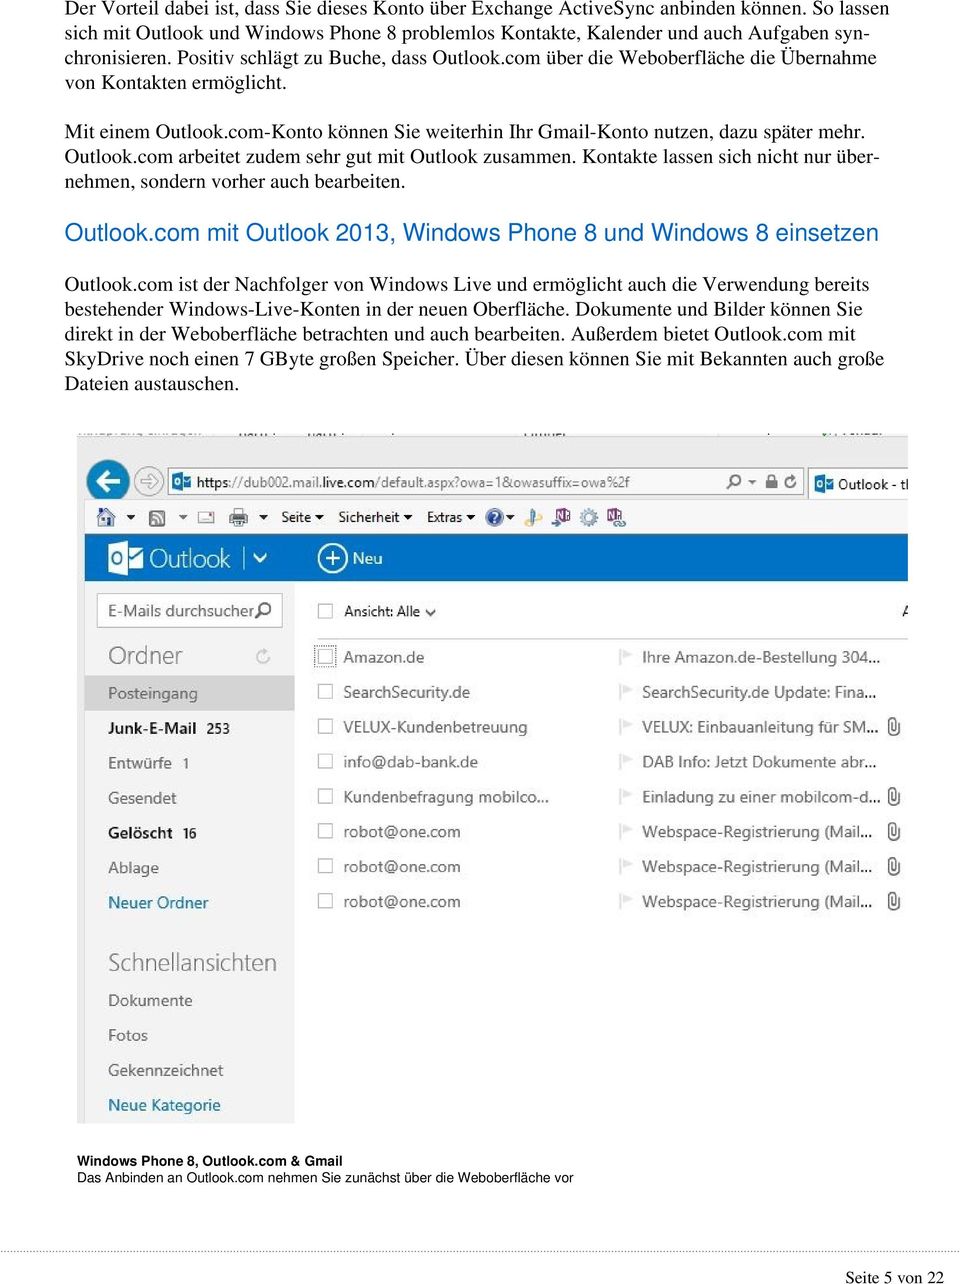 Outlook.com arbeitet zudem sehr gut mit Outlook zusammen. Kontakte lassen sich nicht nur übernehmen, sondern vorher auch bearbeiten. Outlook.com mit Outlook 2013, Windows Phone 8 und Windows 8 einsetzen Outlook.